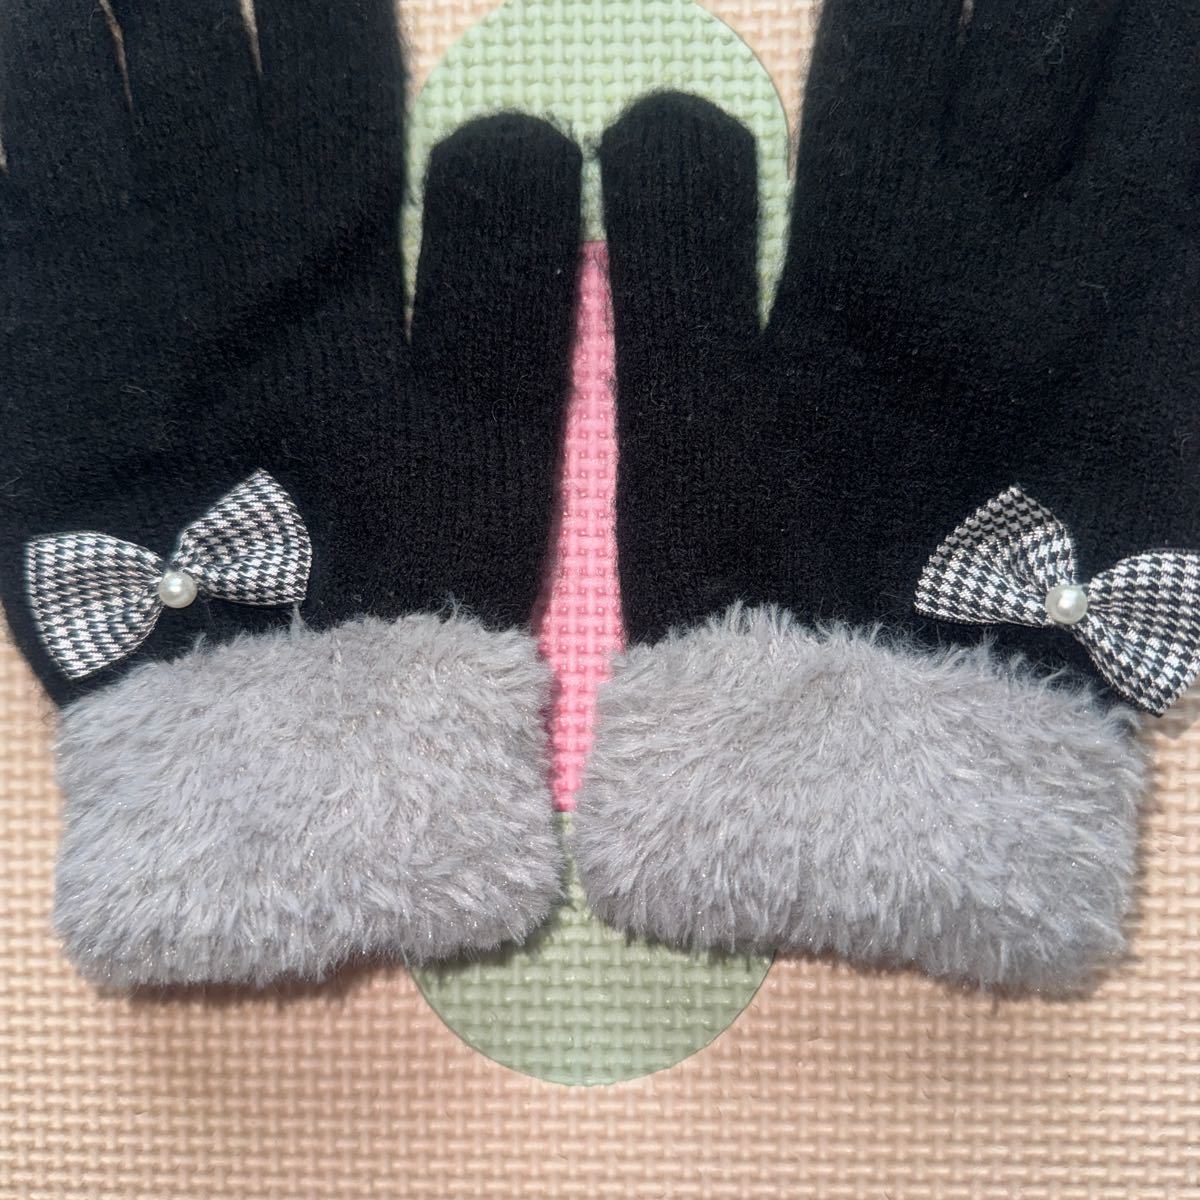 [ быстрое решение ] Kids для девочки чрезвычайно симпатичный перчатки защищающий от холода перчатка 